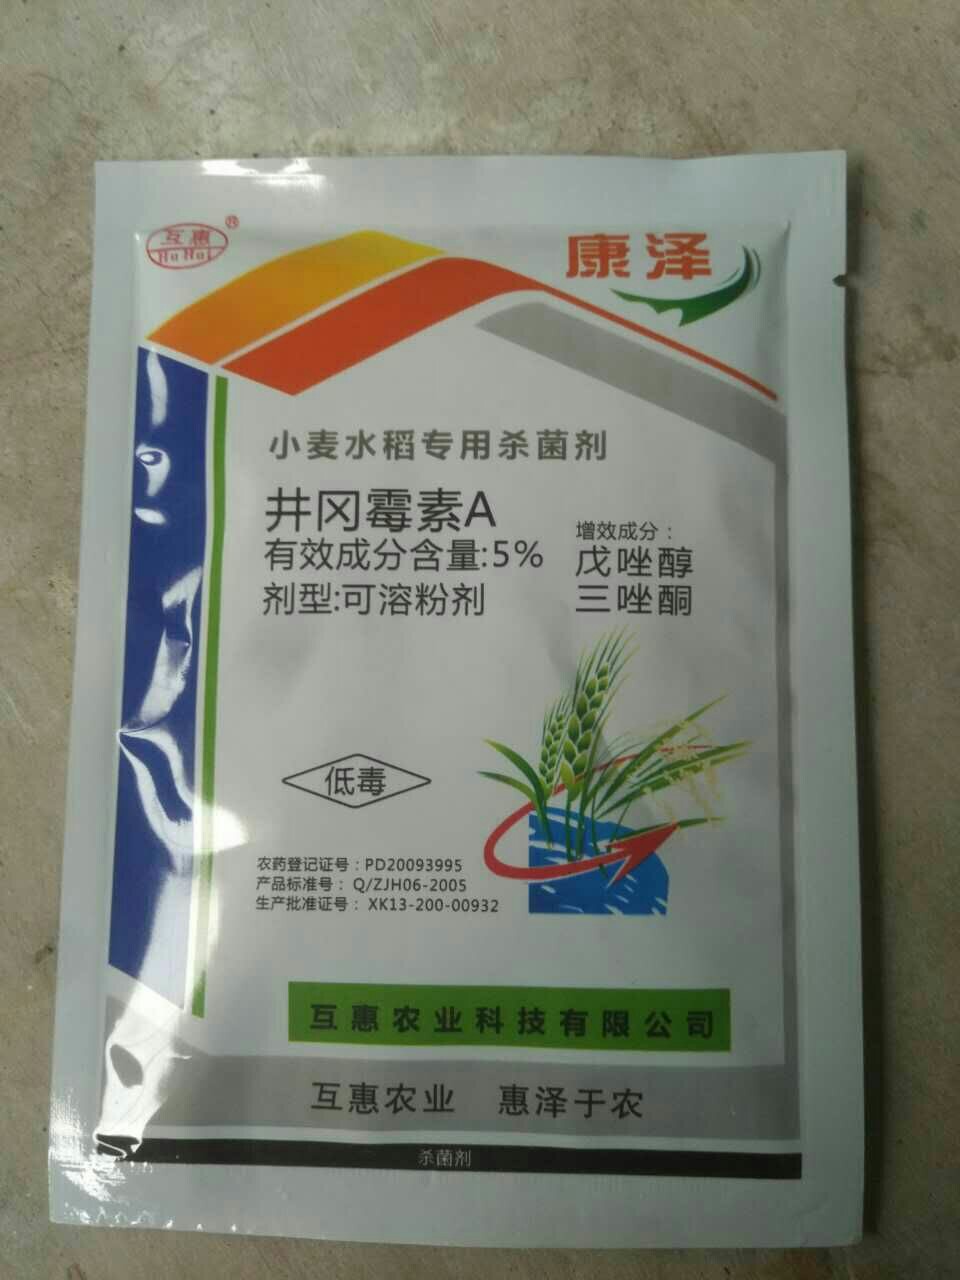 戊唑醇  小麦水稻专用杀菌剂 220.00 元/桶